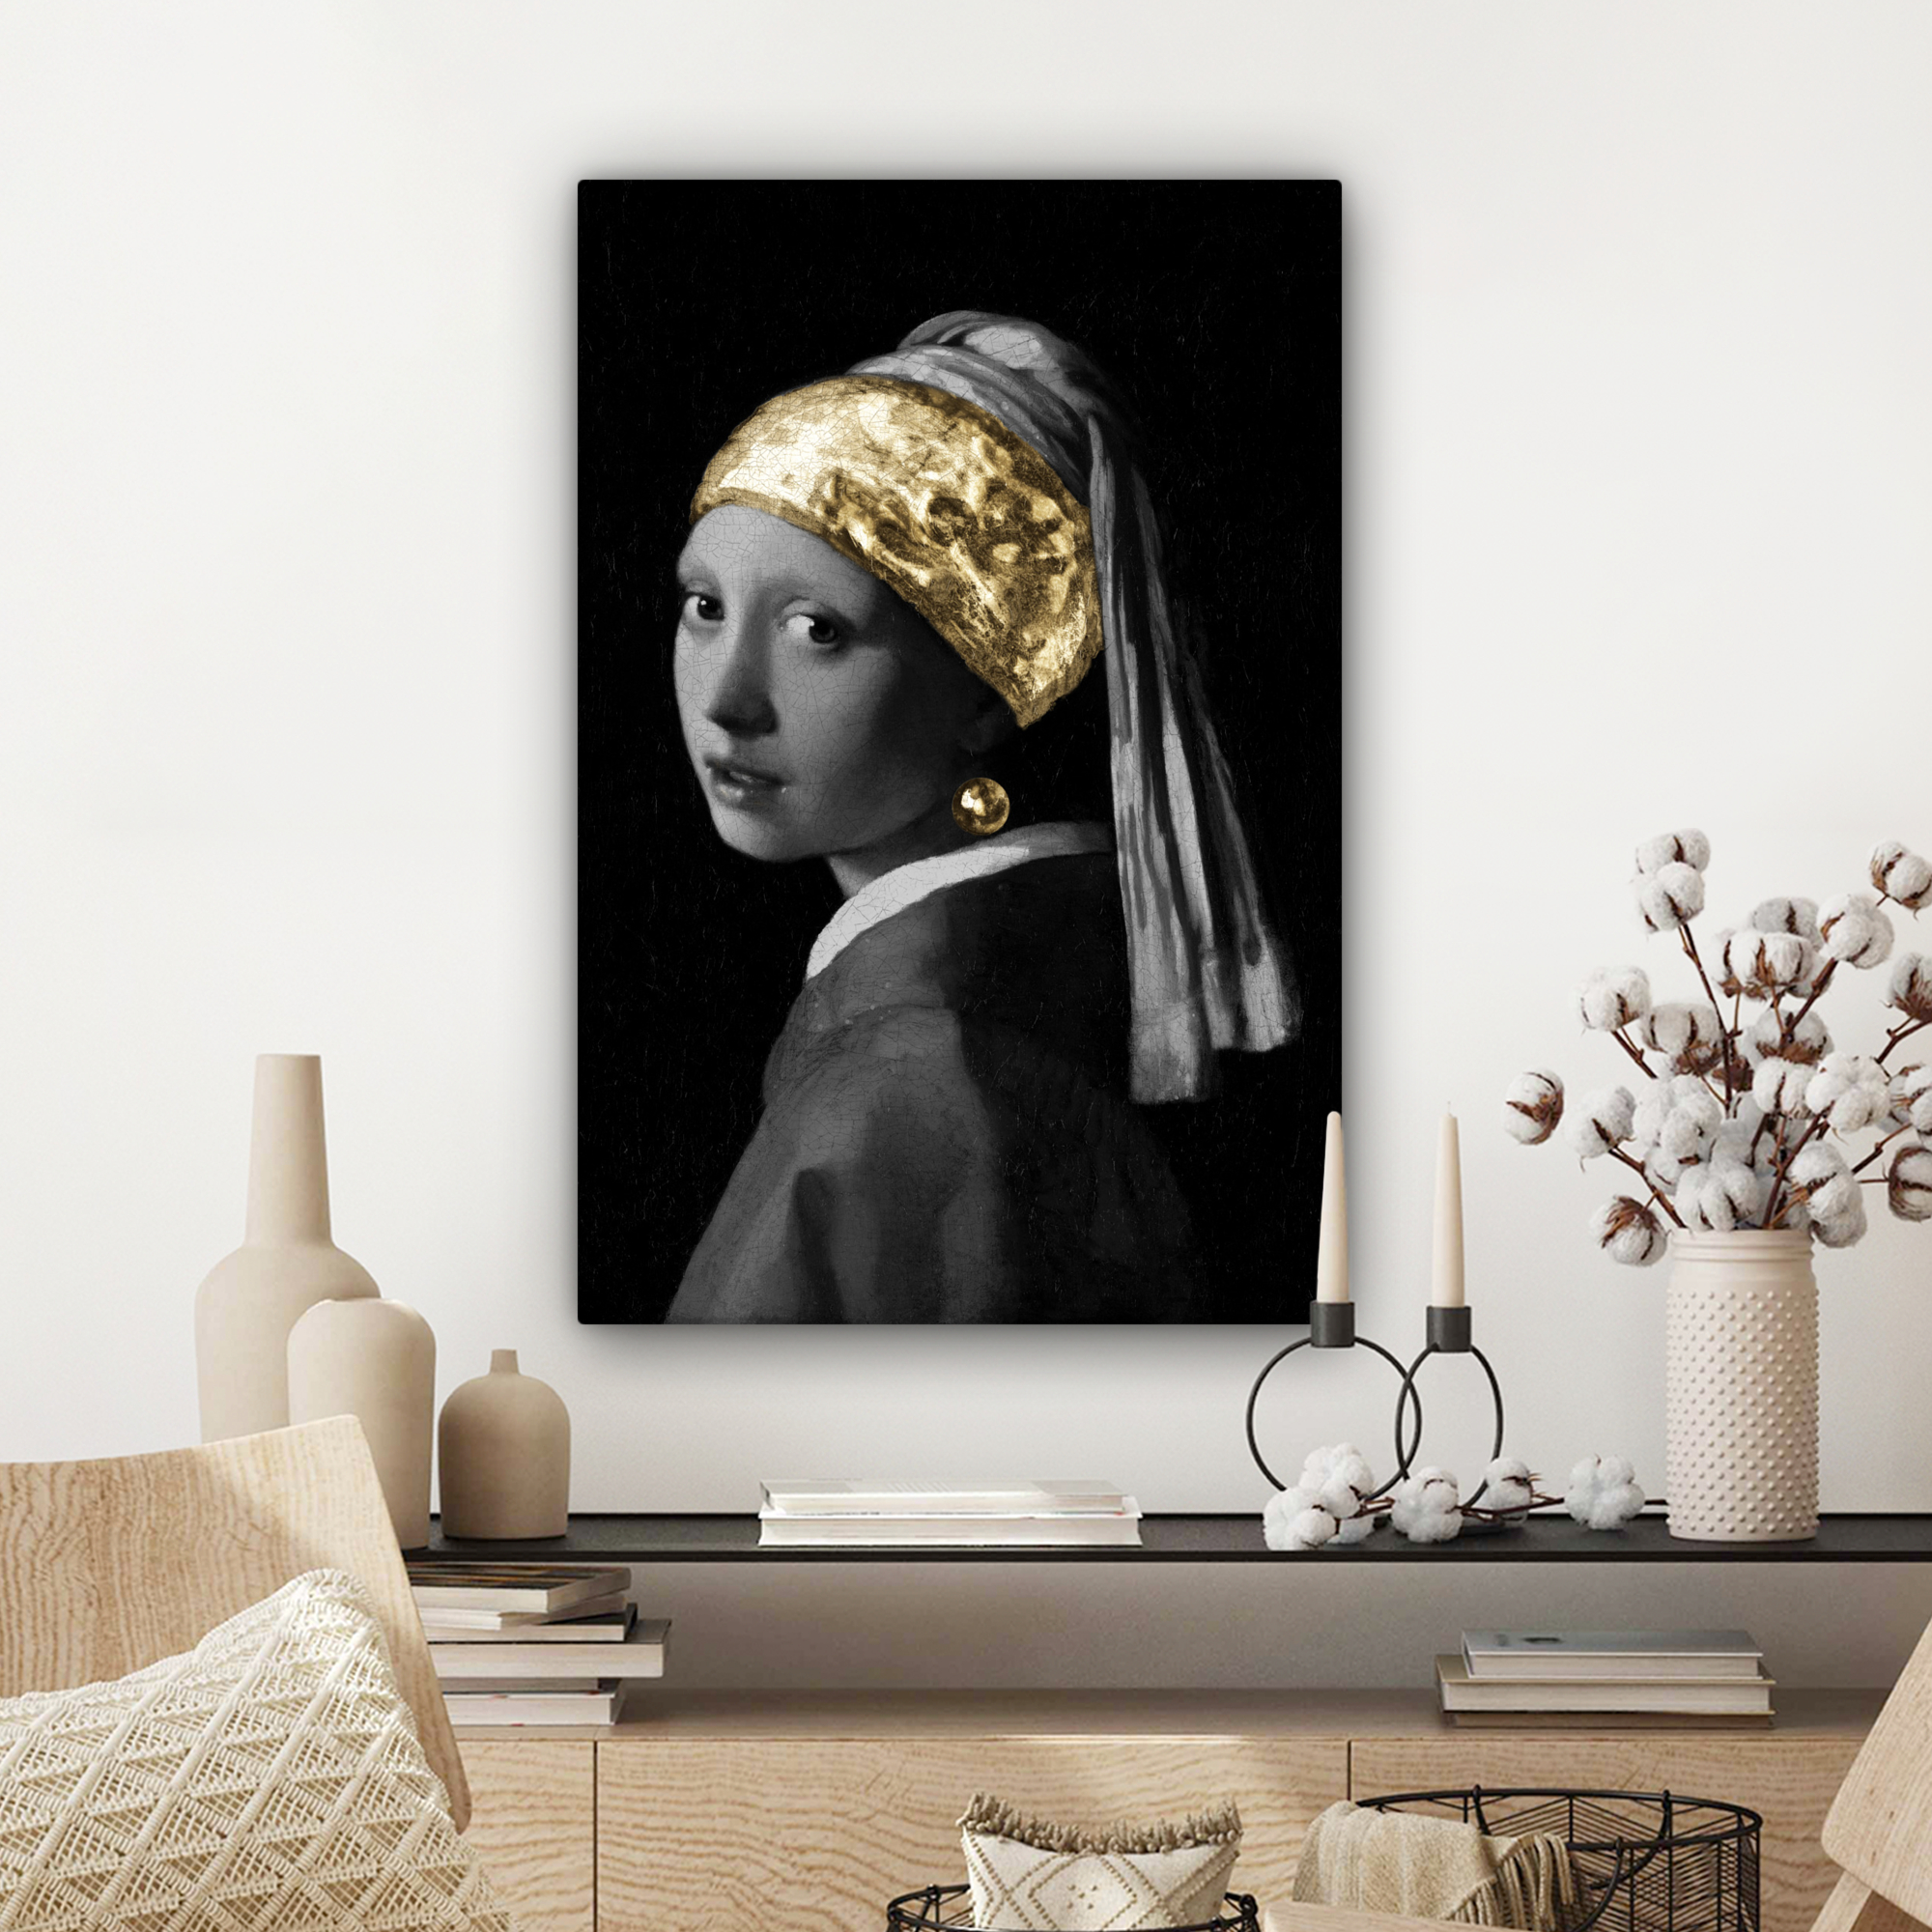 Tableau sur toile - Jeune fille à la perle - Johannes Vermeer - Or-3